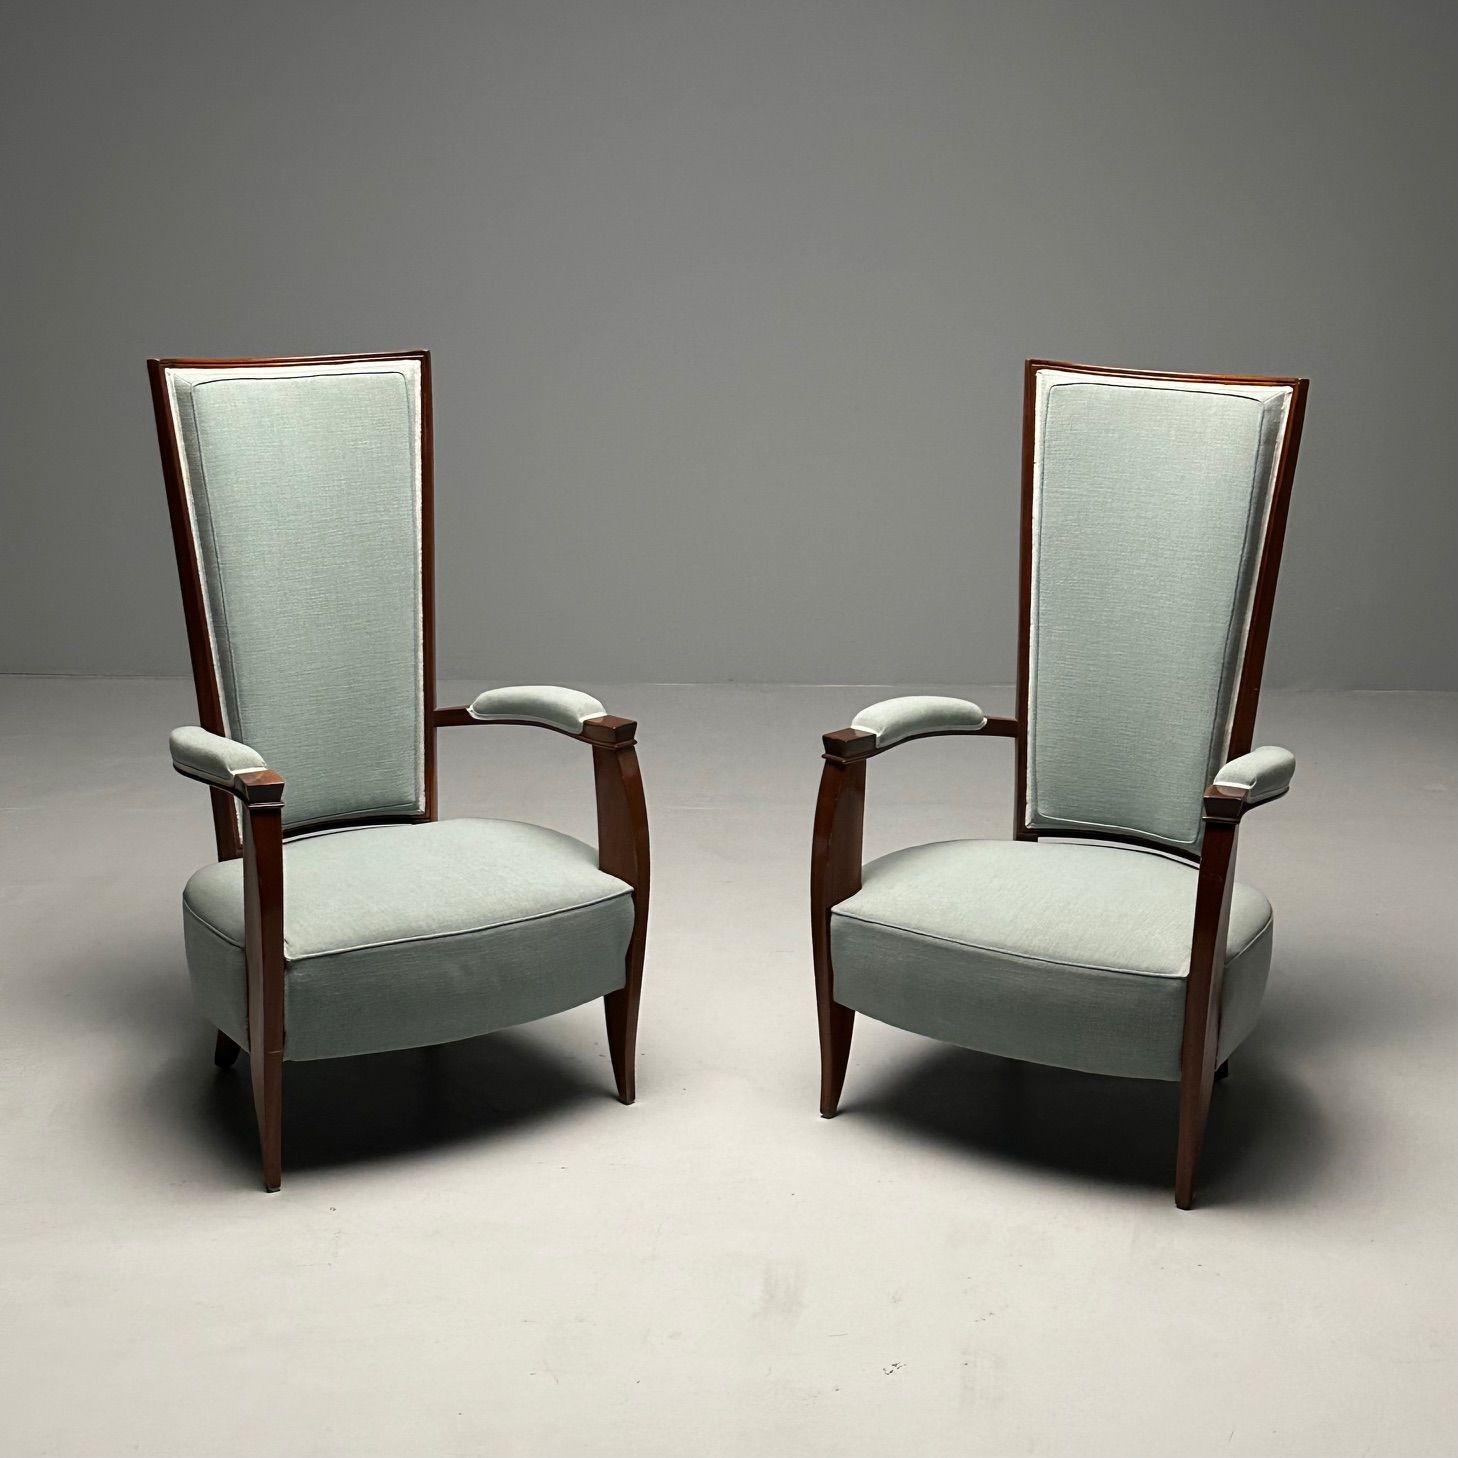 Paire de chaises d'appoint à dossier haut en acajou Art Déco, lin turquoise

Ensemble de deux fauteuils à haut dossier de style High Style Deco, avec des cadres élégants en acajou et une tapisserie d'ameublement durable de couleur turquoise.